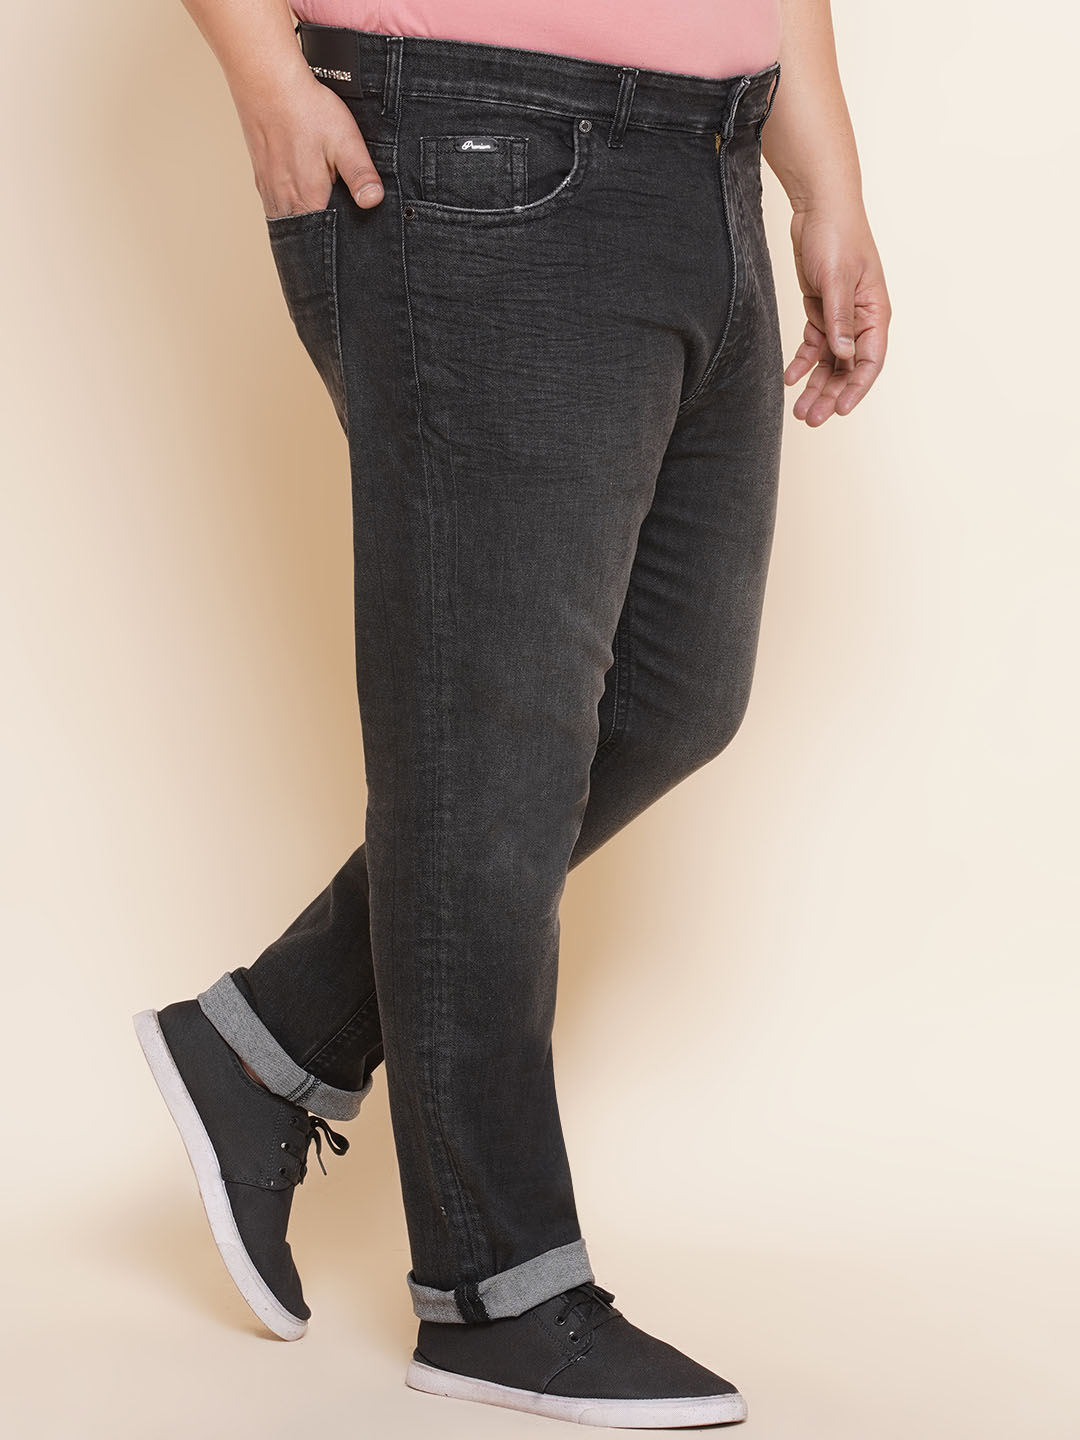 bottomwear/jeans/PJPJ6062/pjpj6062-3.jpg